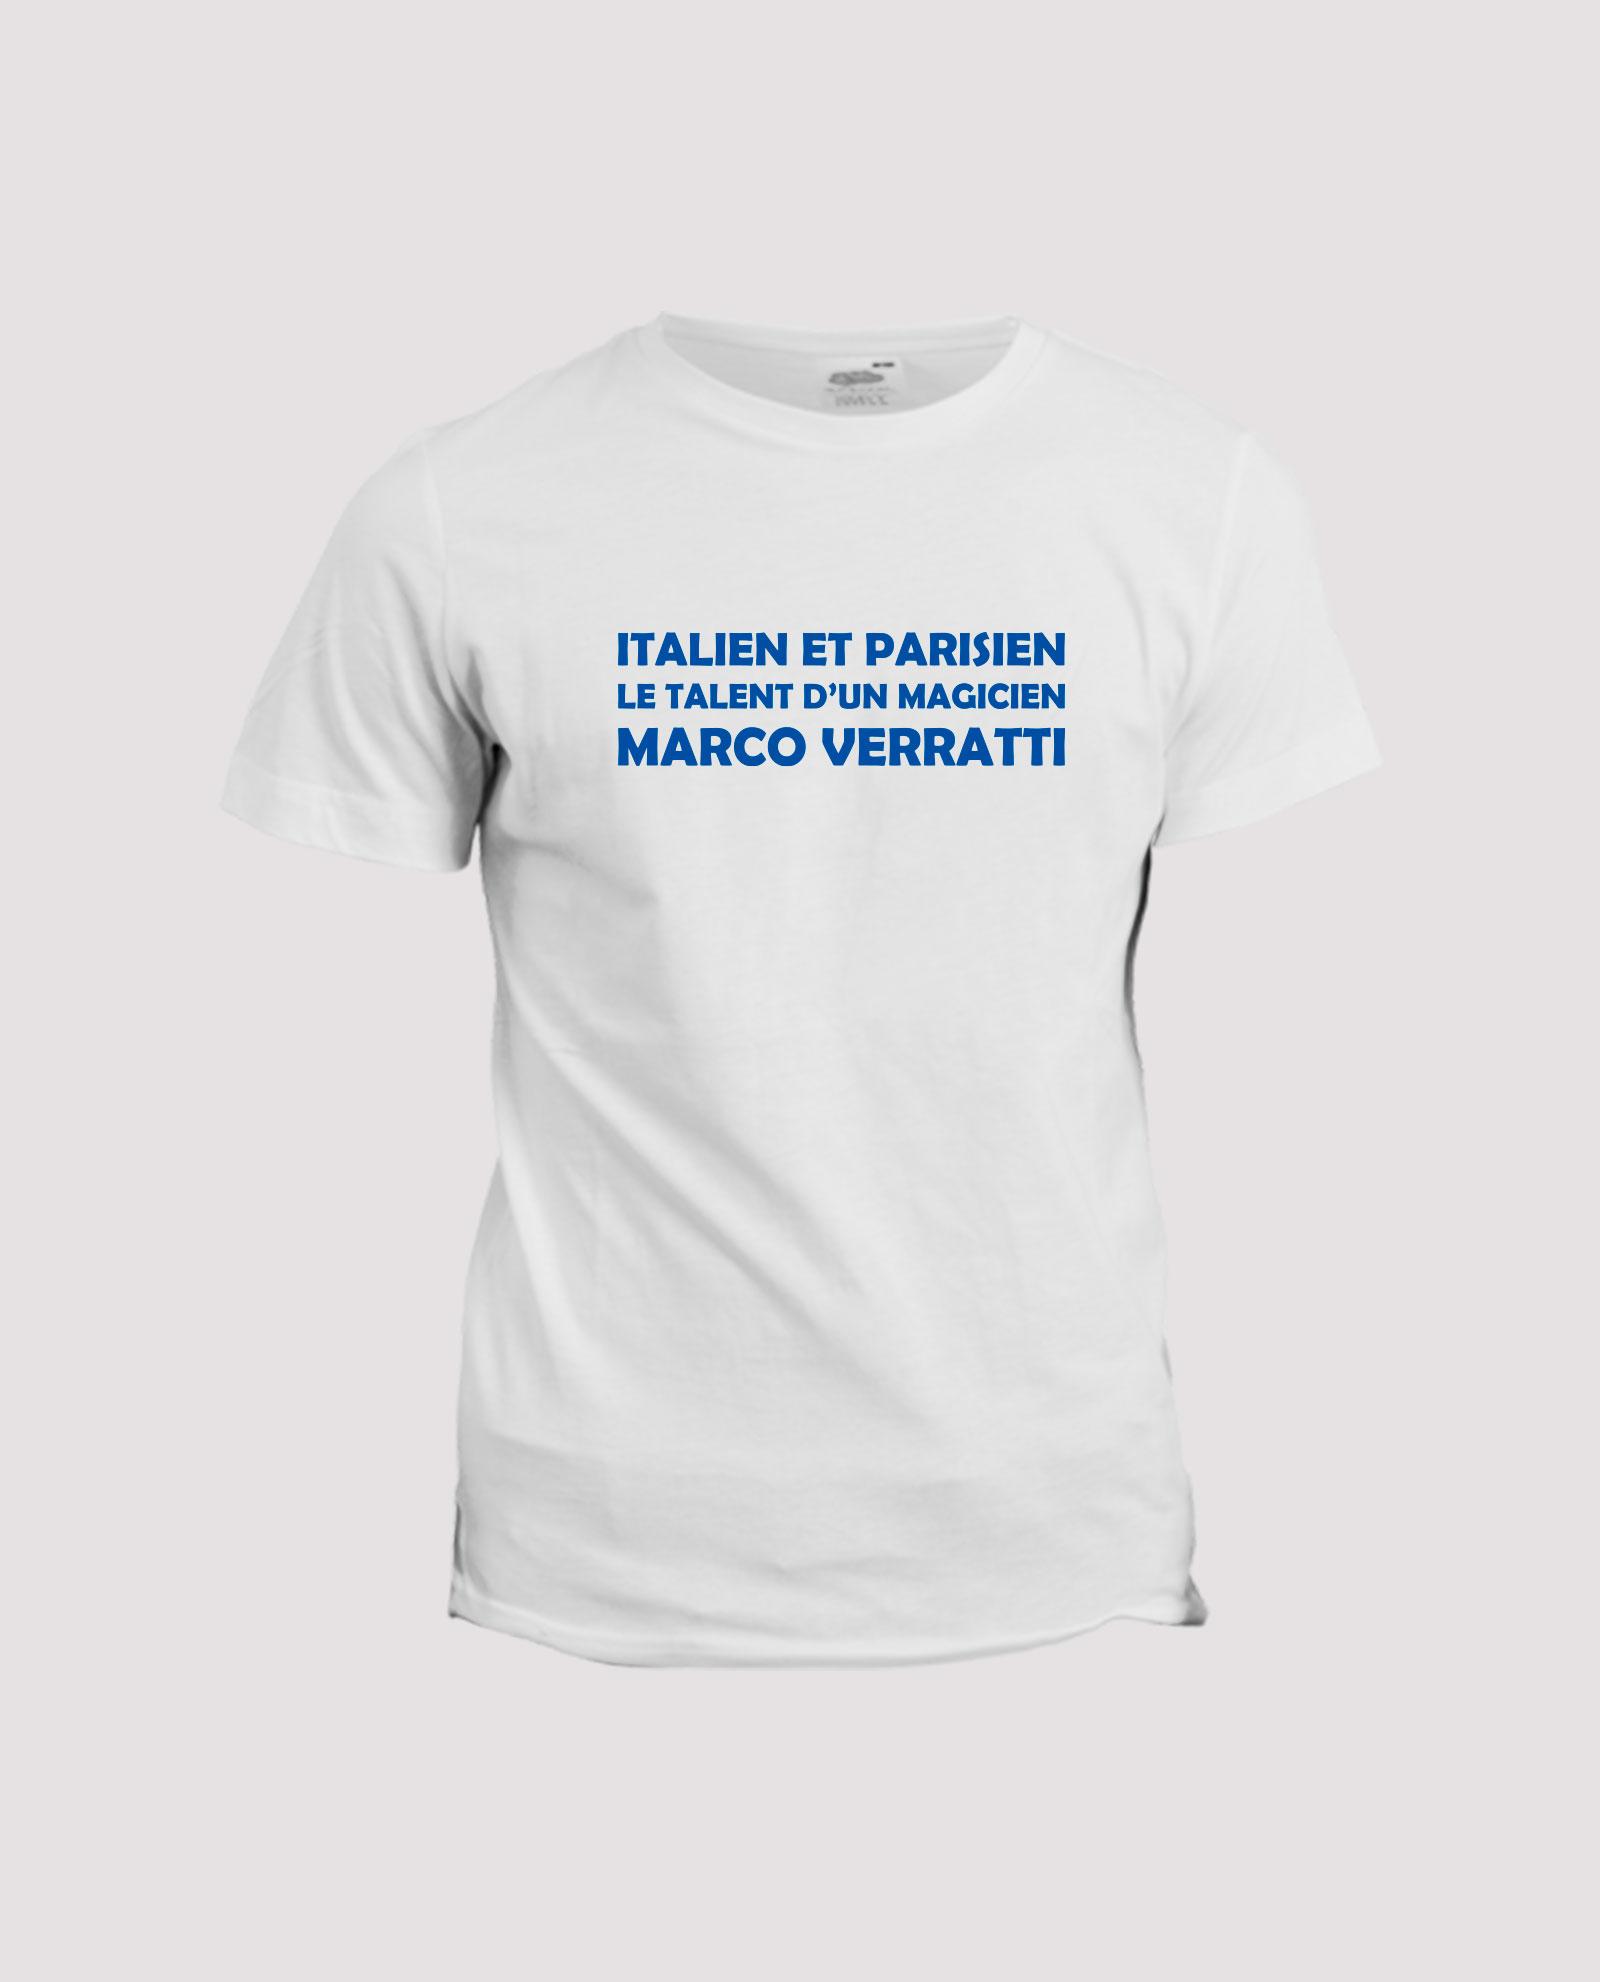 la-ligne-shop-t-shirt-chant-supporter-football-soccer-psg-italien-et-parisien-le-talent-d-un-magicien-marco-verratti